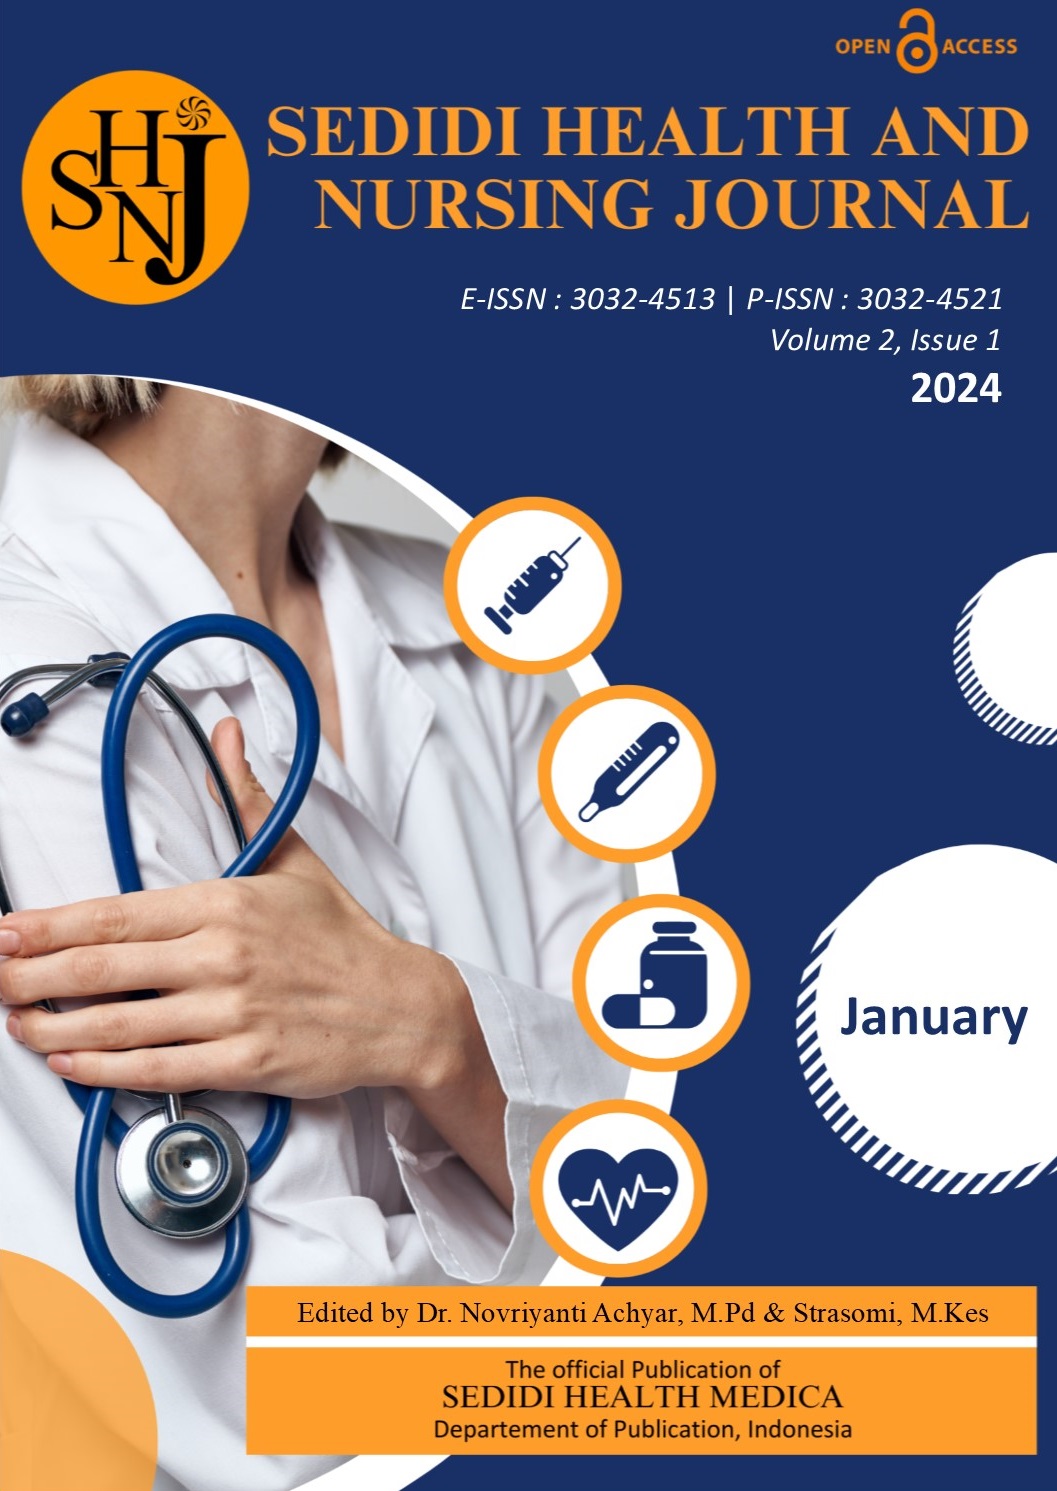 					Lihat Vol 2 No 1 (2024): Sedidi Health and Nursing Journal
				